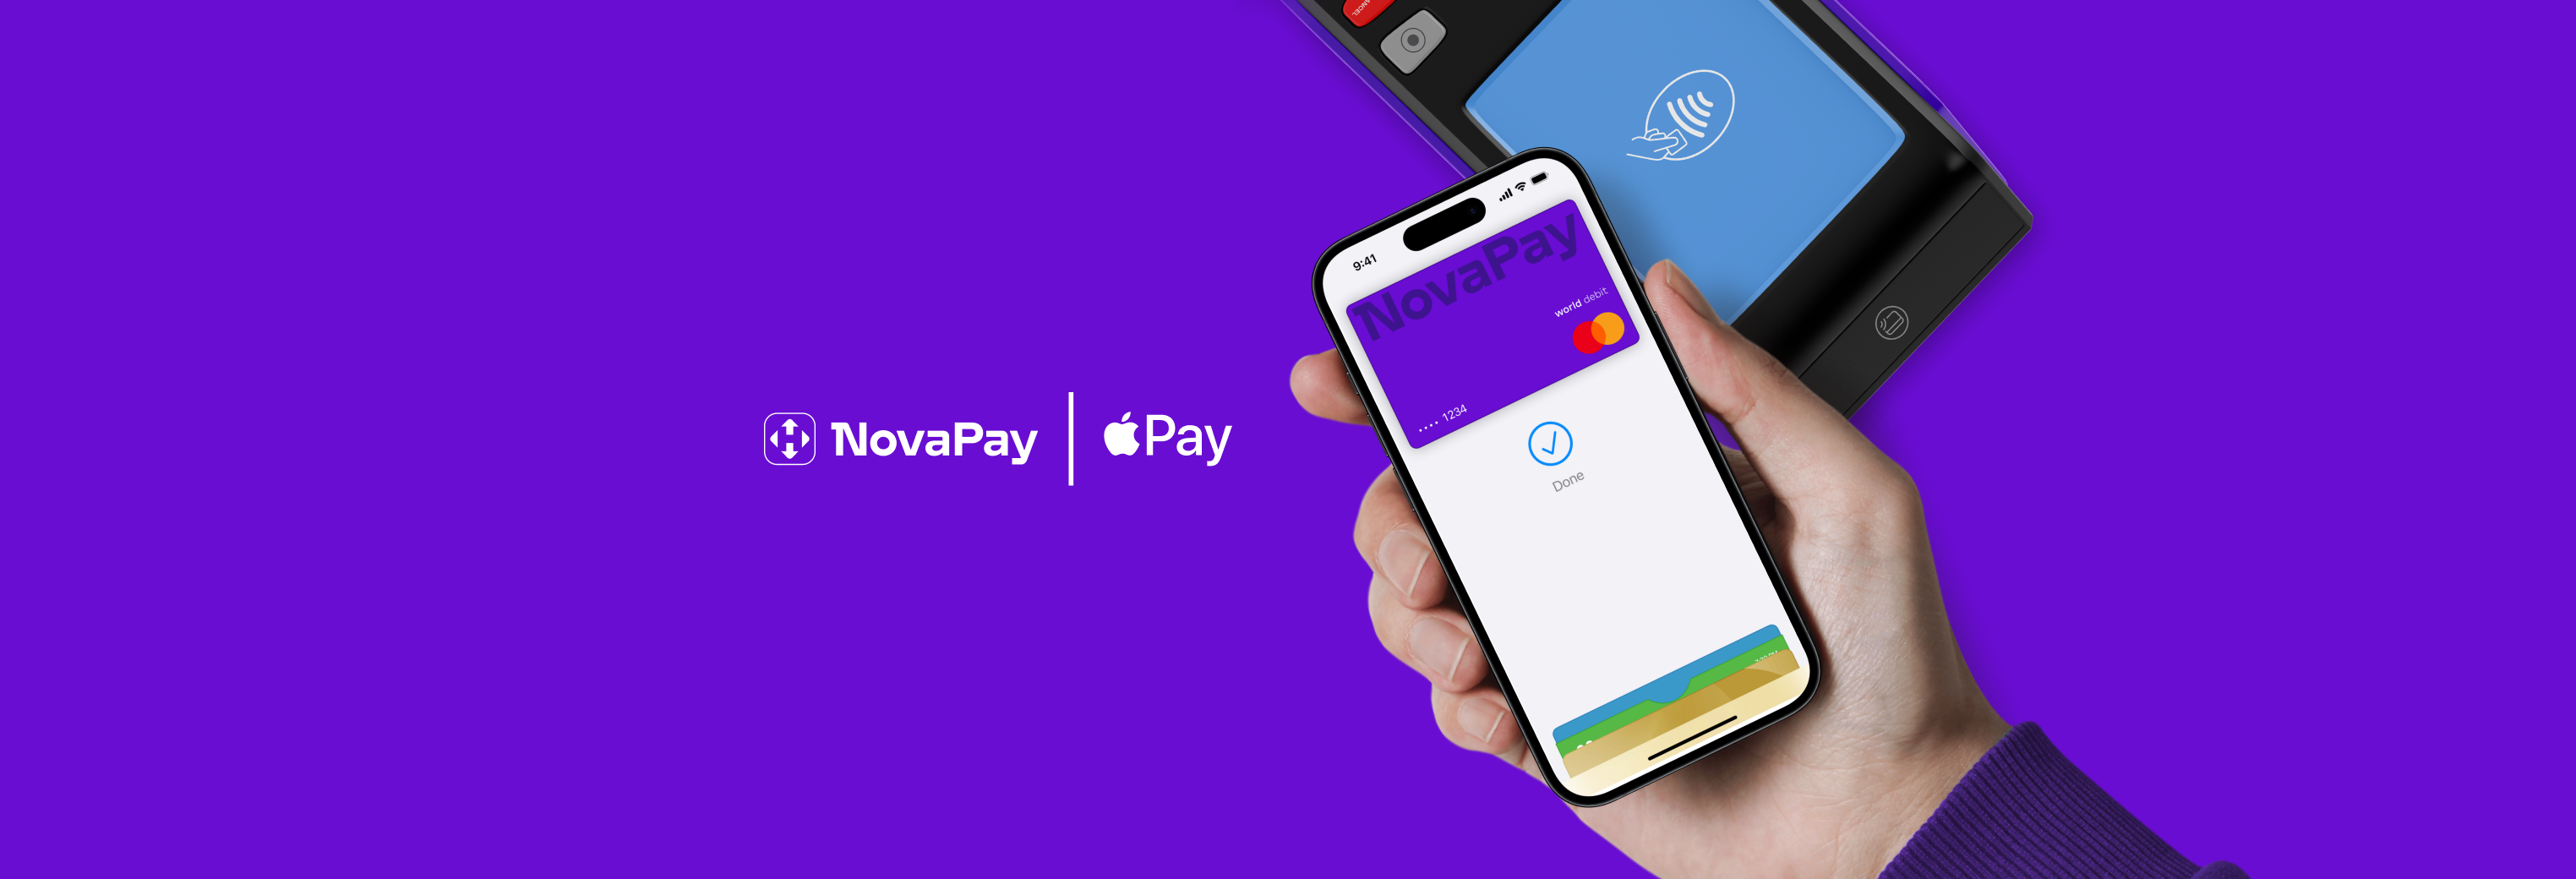 Apple Pay став доступним держателям карток NovaPay